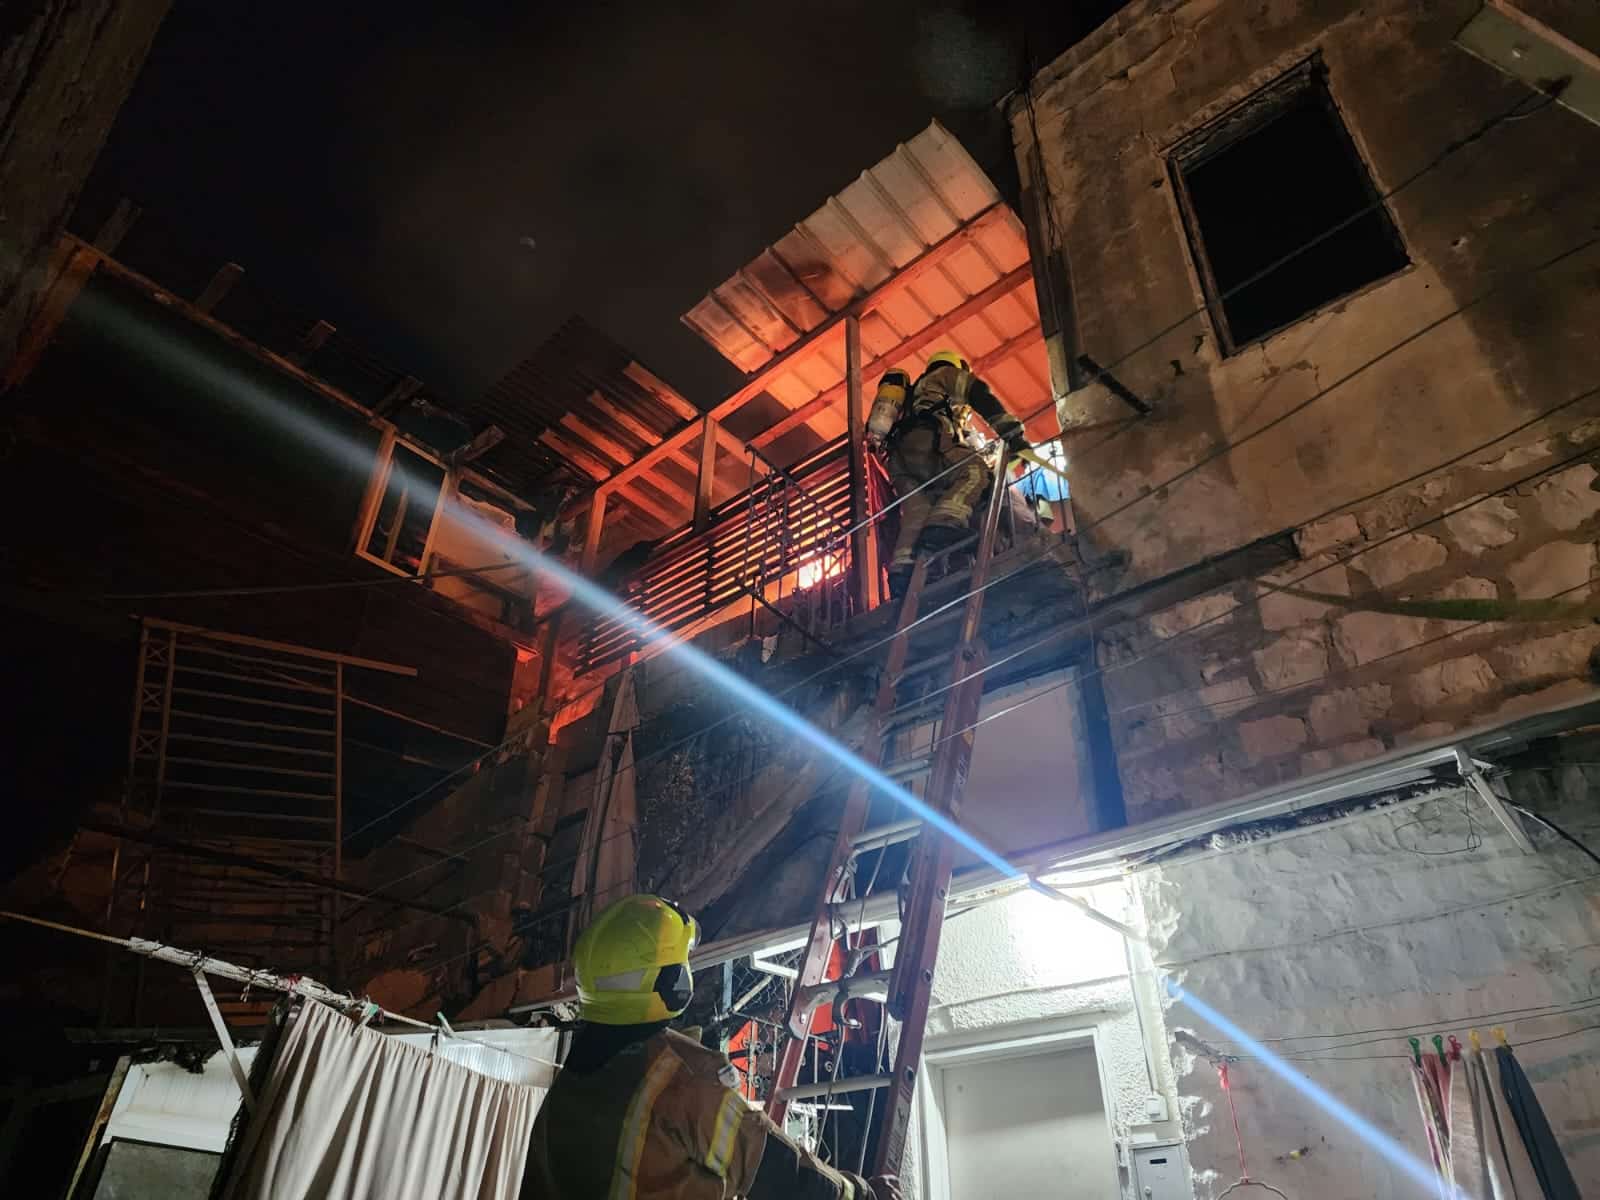 שריפת פרגולה במרפסת מבנה מגורים בחיפה | צפו